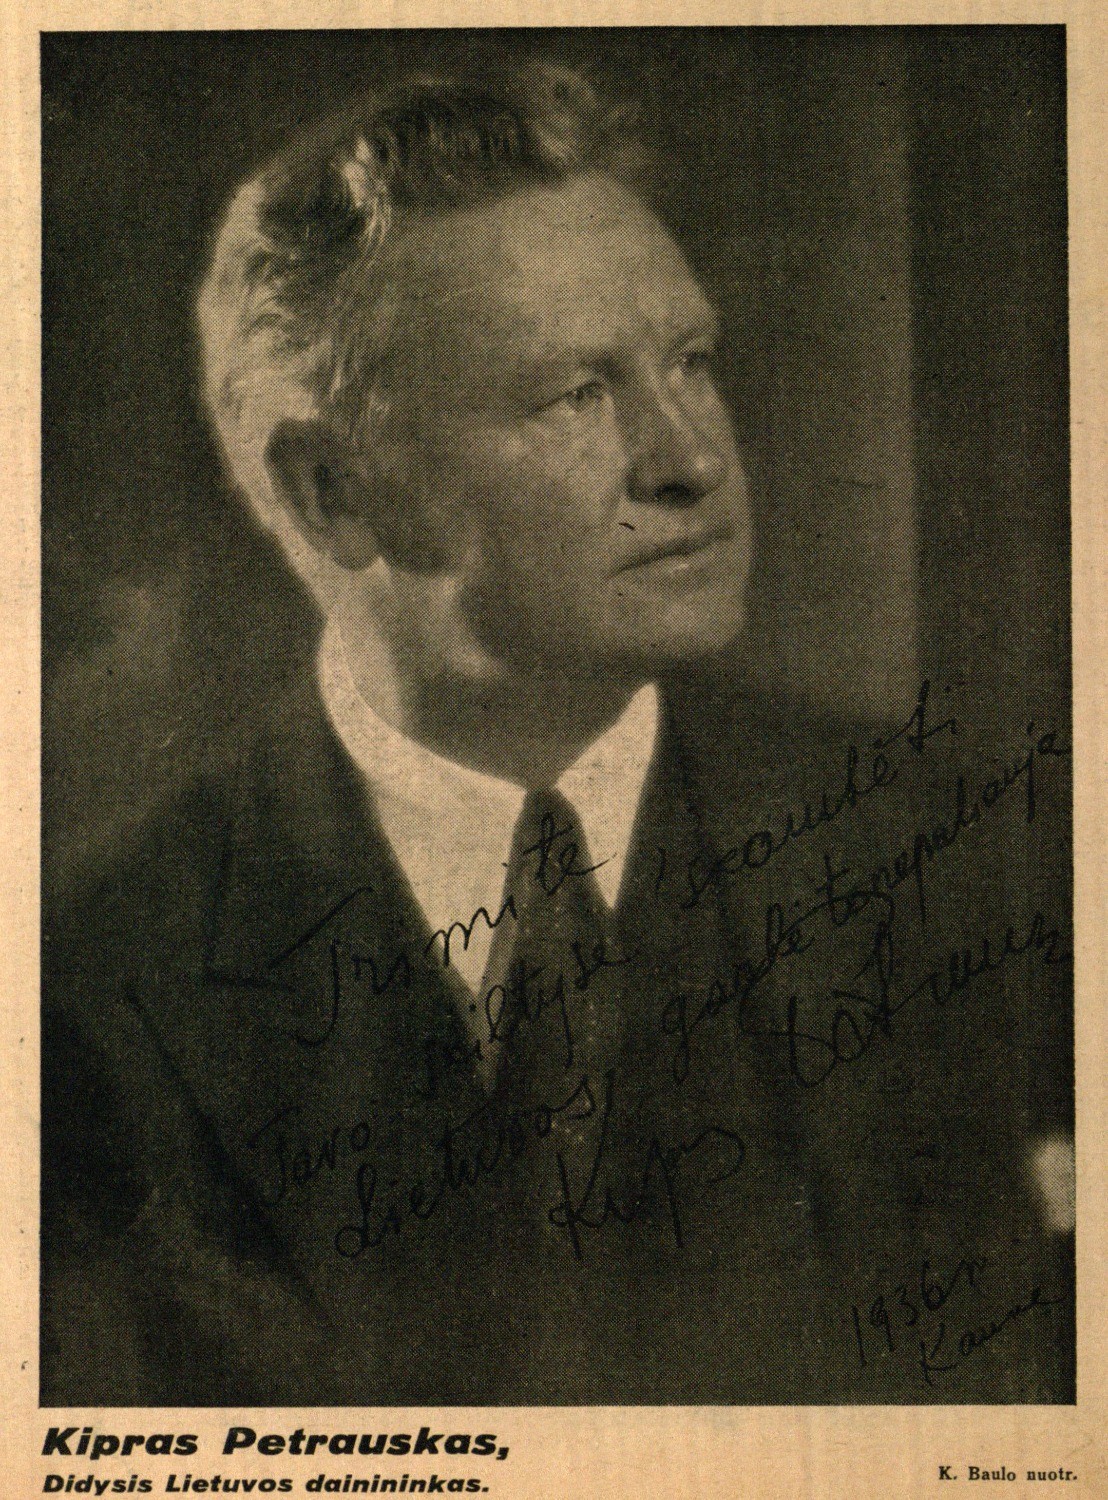 Kipras Petrauskas, Didysis Lietuvos dainininkas: K. Baulo nuotr. // Trimitas. – 1936, Nr. 14, virš. p.